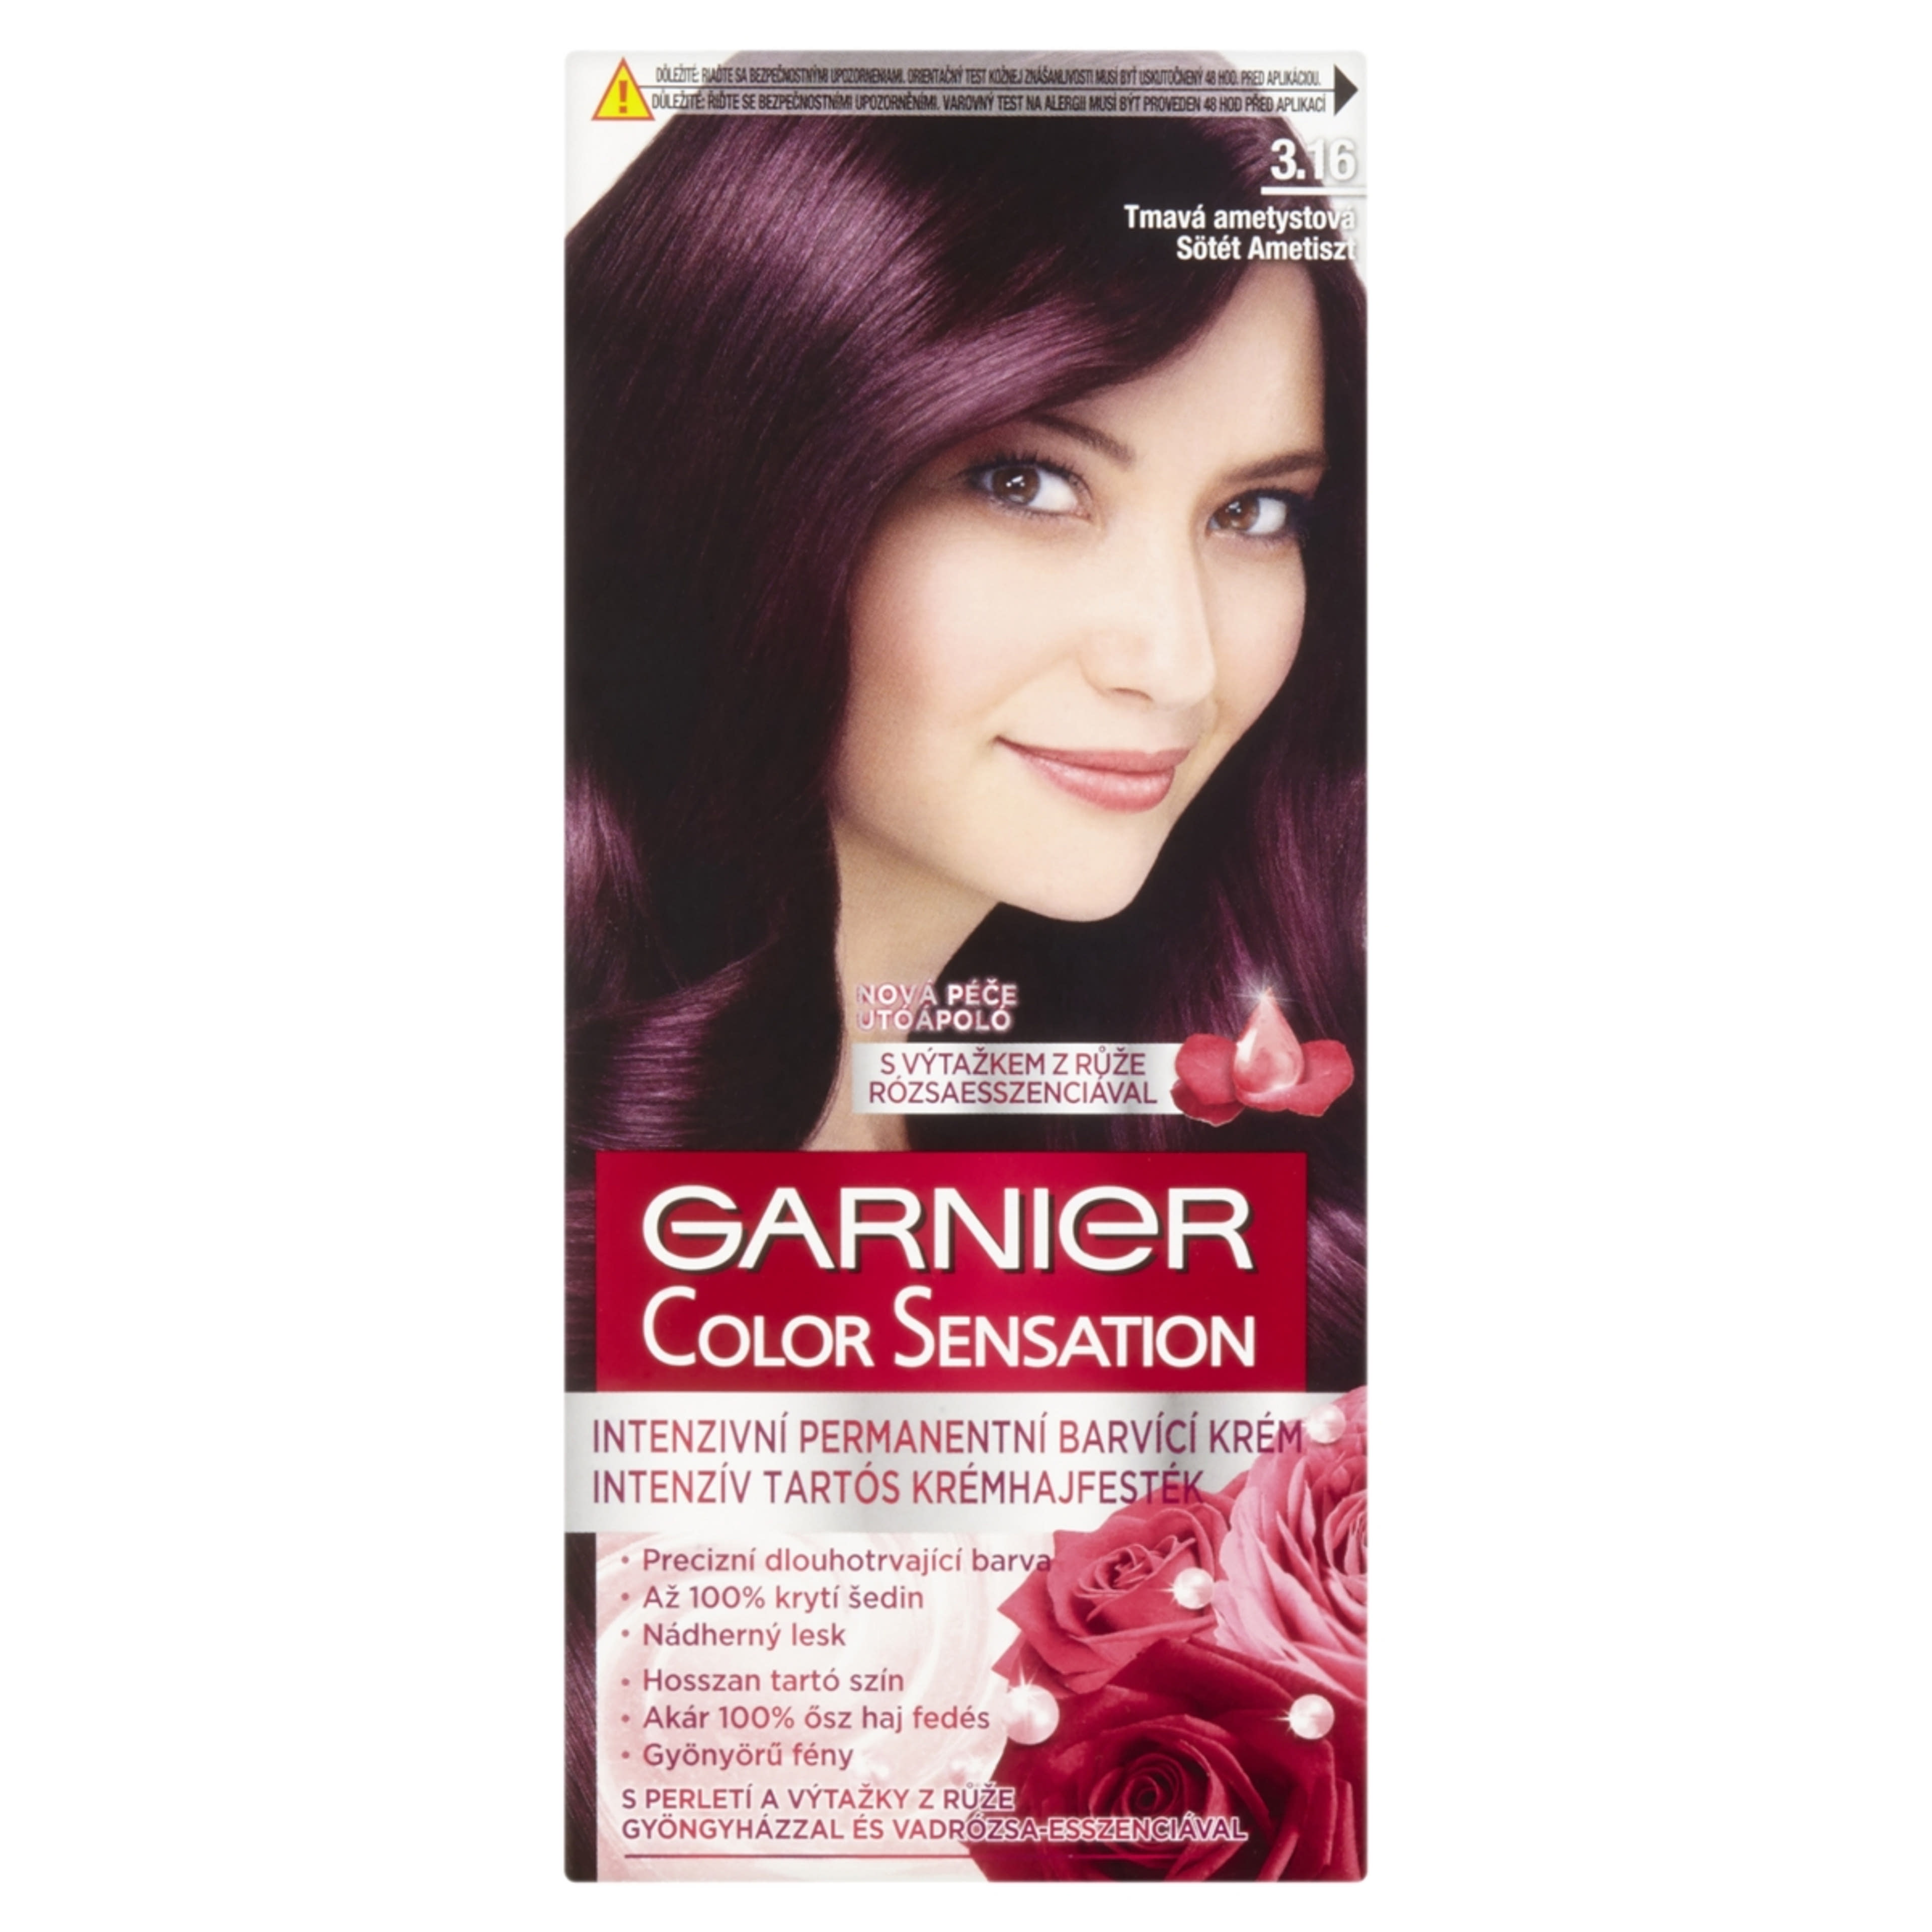 Garnier Color Sensation hajfesték 3.16 Sötét ametiszt - 1 db-1